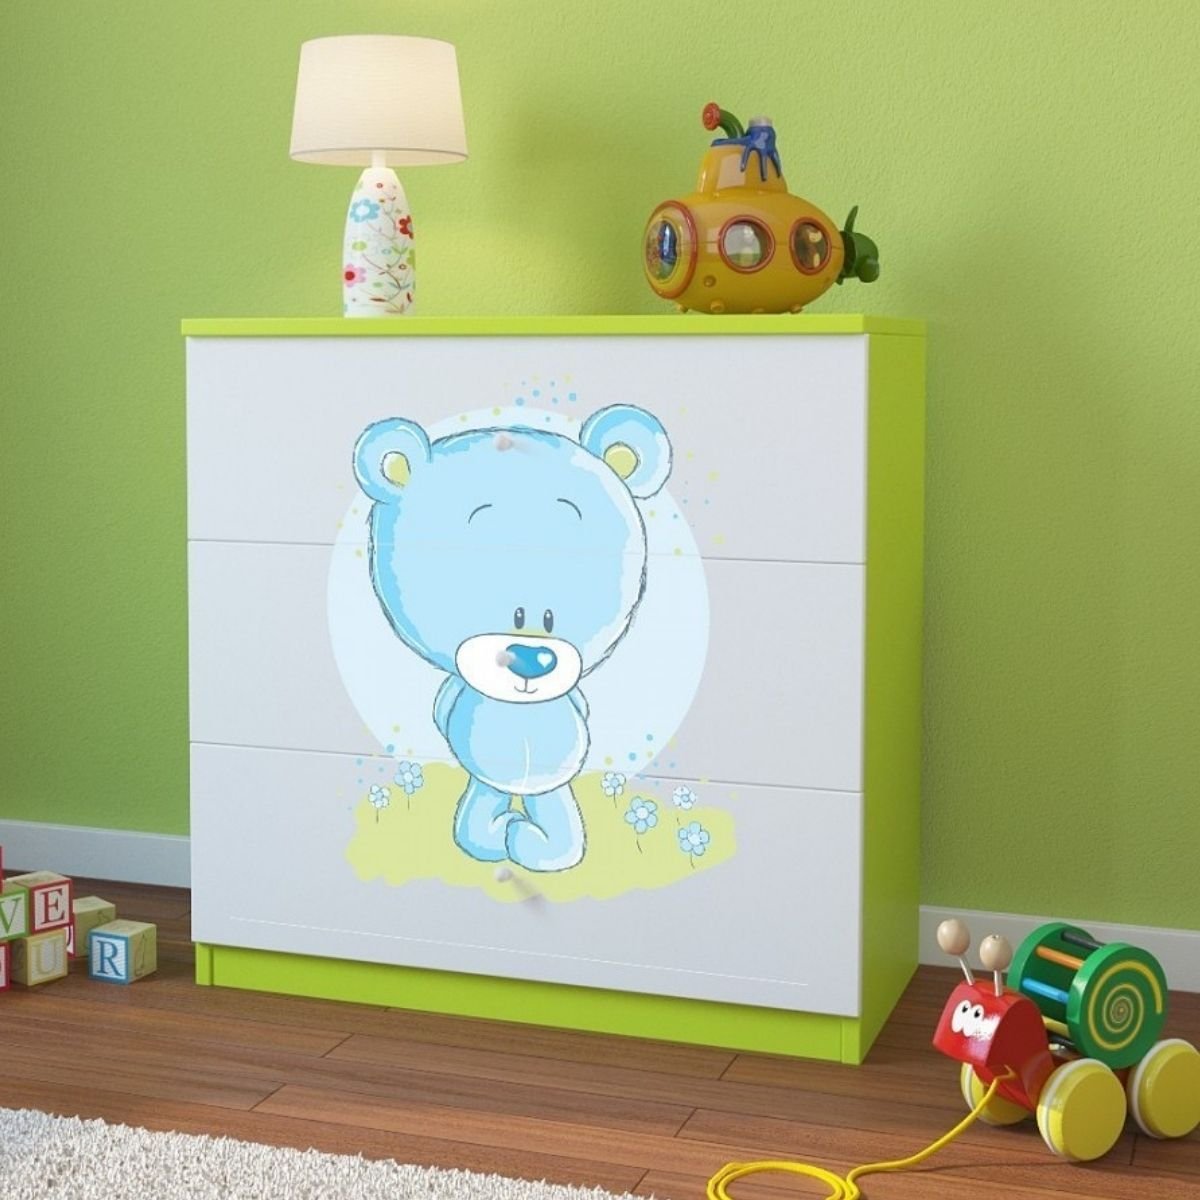 KocotKids Komoda do pokoju dziecięcego, babydreams, niebieski miś, 81 cm, zielona